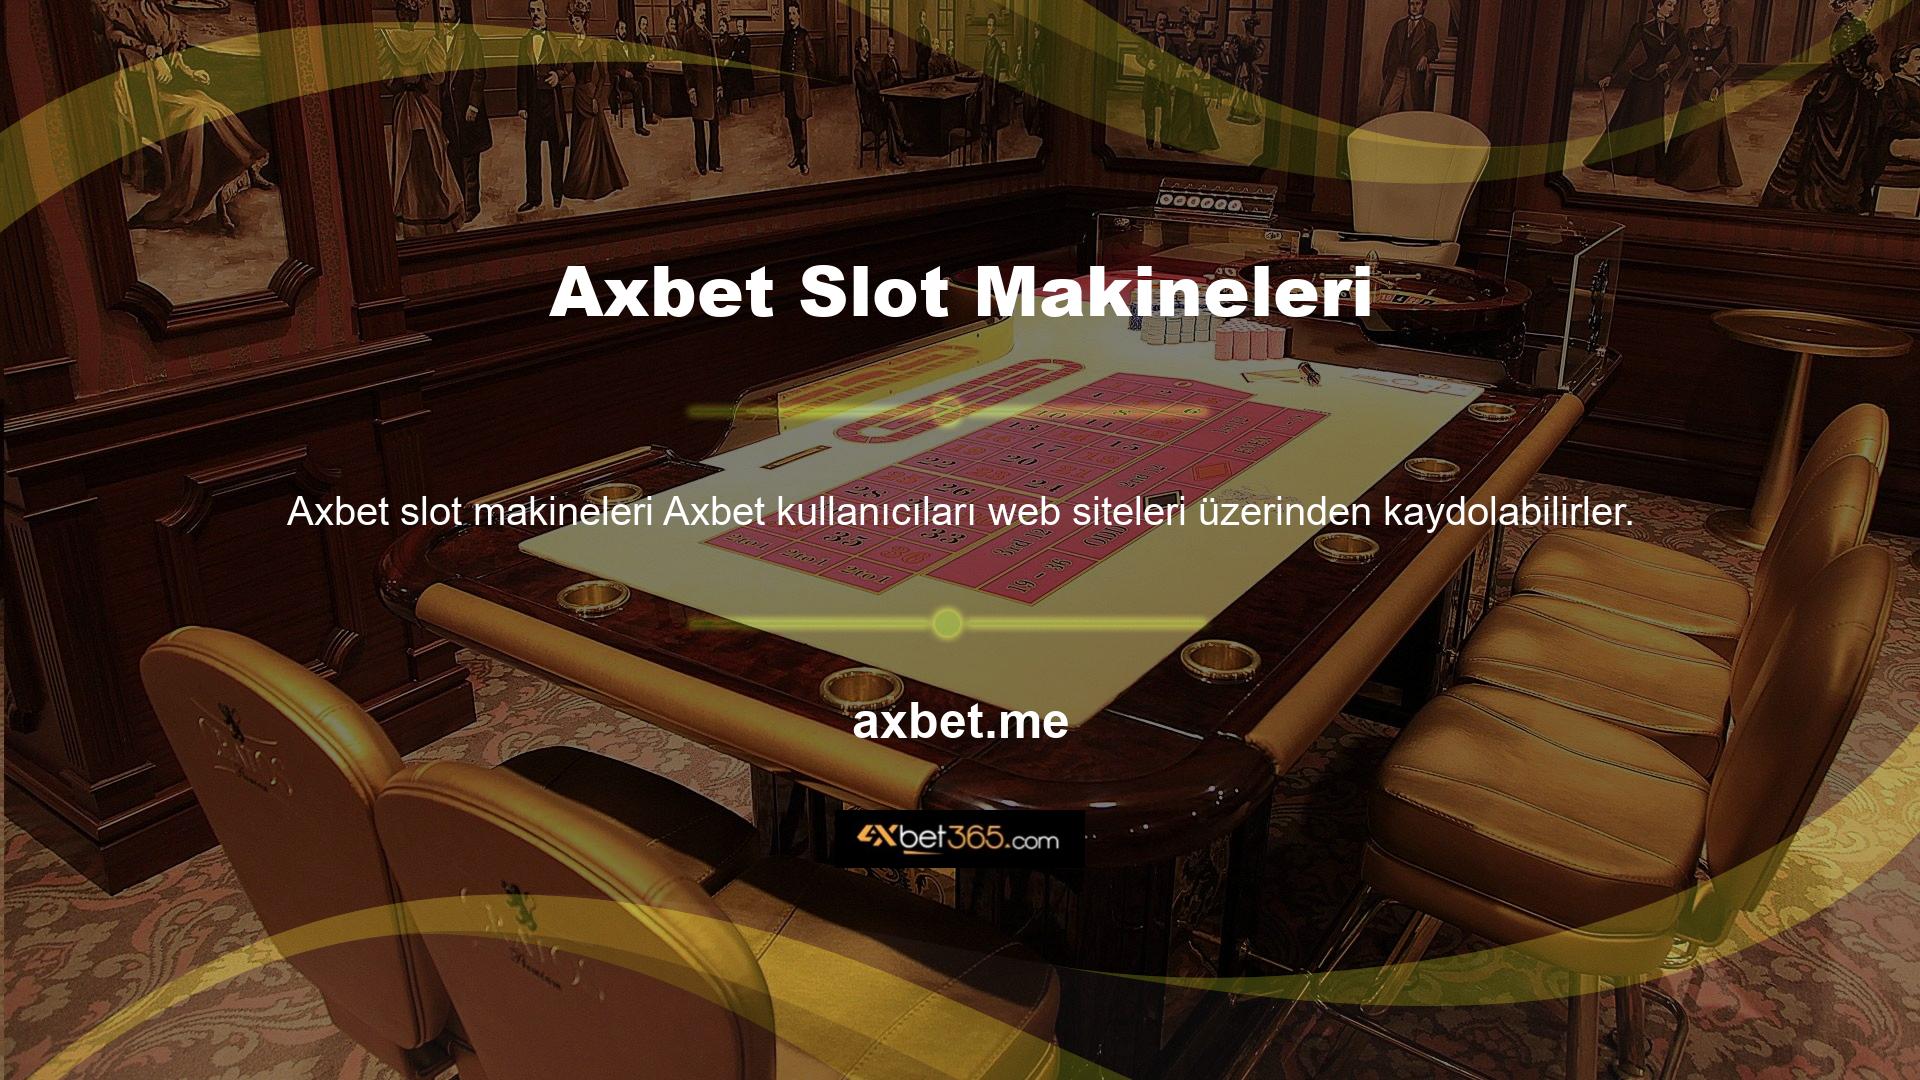 Axbet web sitesinde casino veya slot makinelerinde oynama ve casino oynayamama olasılığı, farklı bir giriş adresi kullanılarak aşılabilir